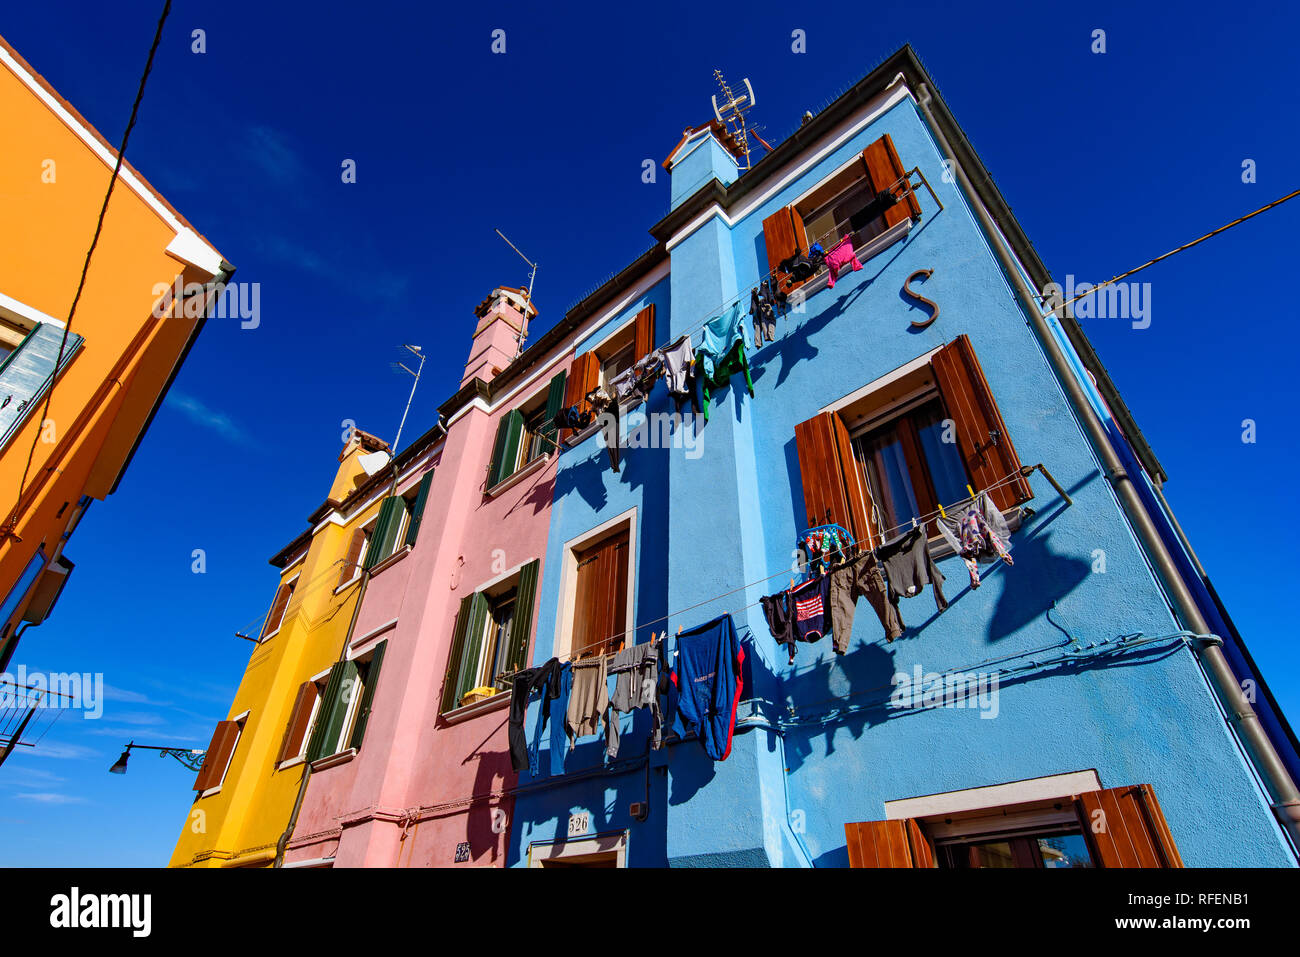 Isola di Burano, famosa per le sue colorate case di pescatori, a Venezia, Italia Foto Stock